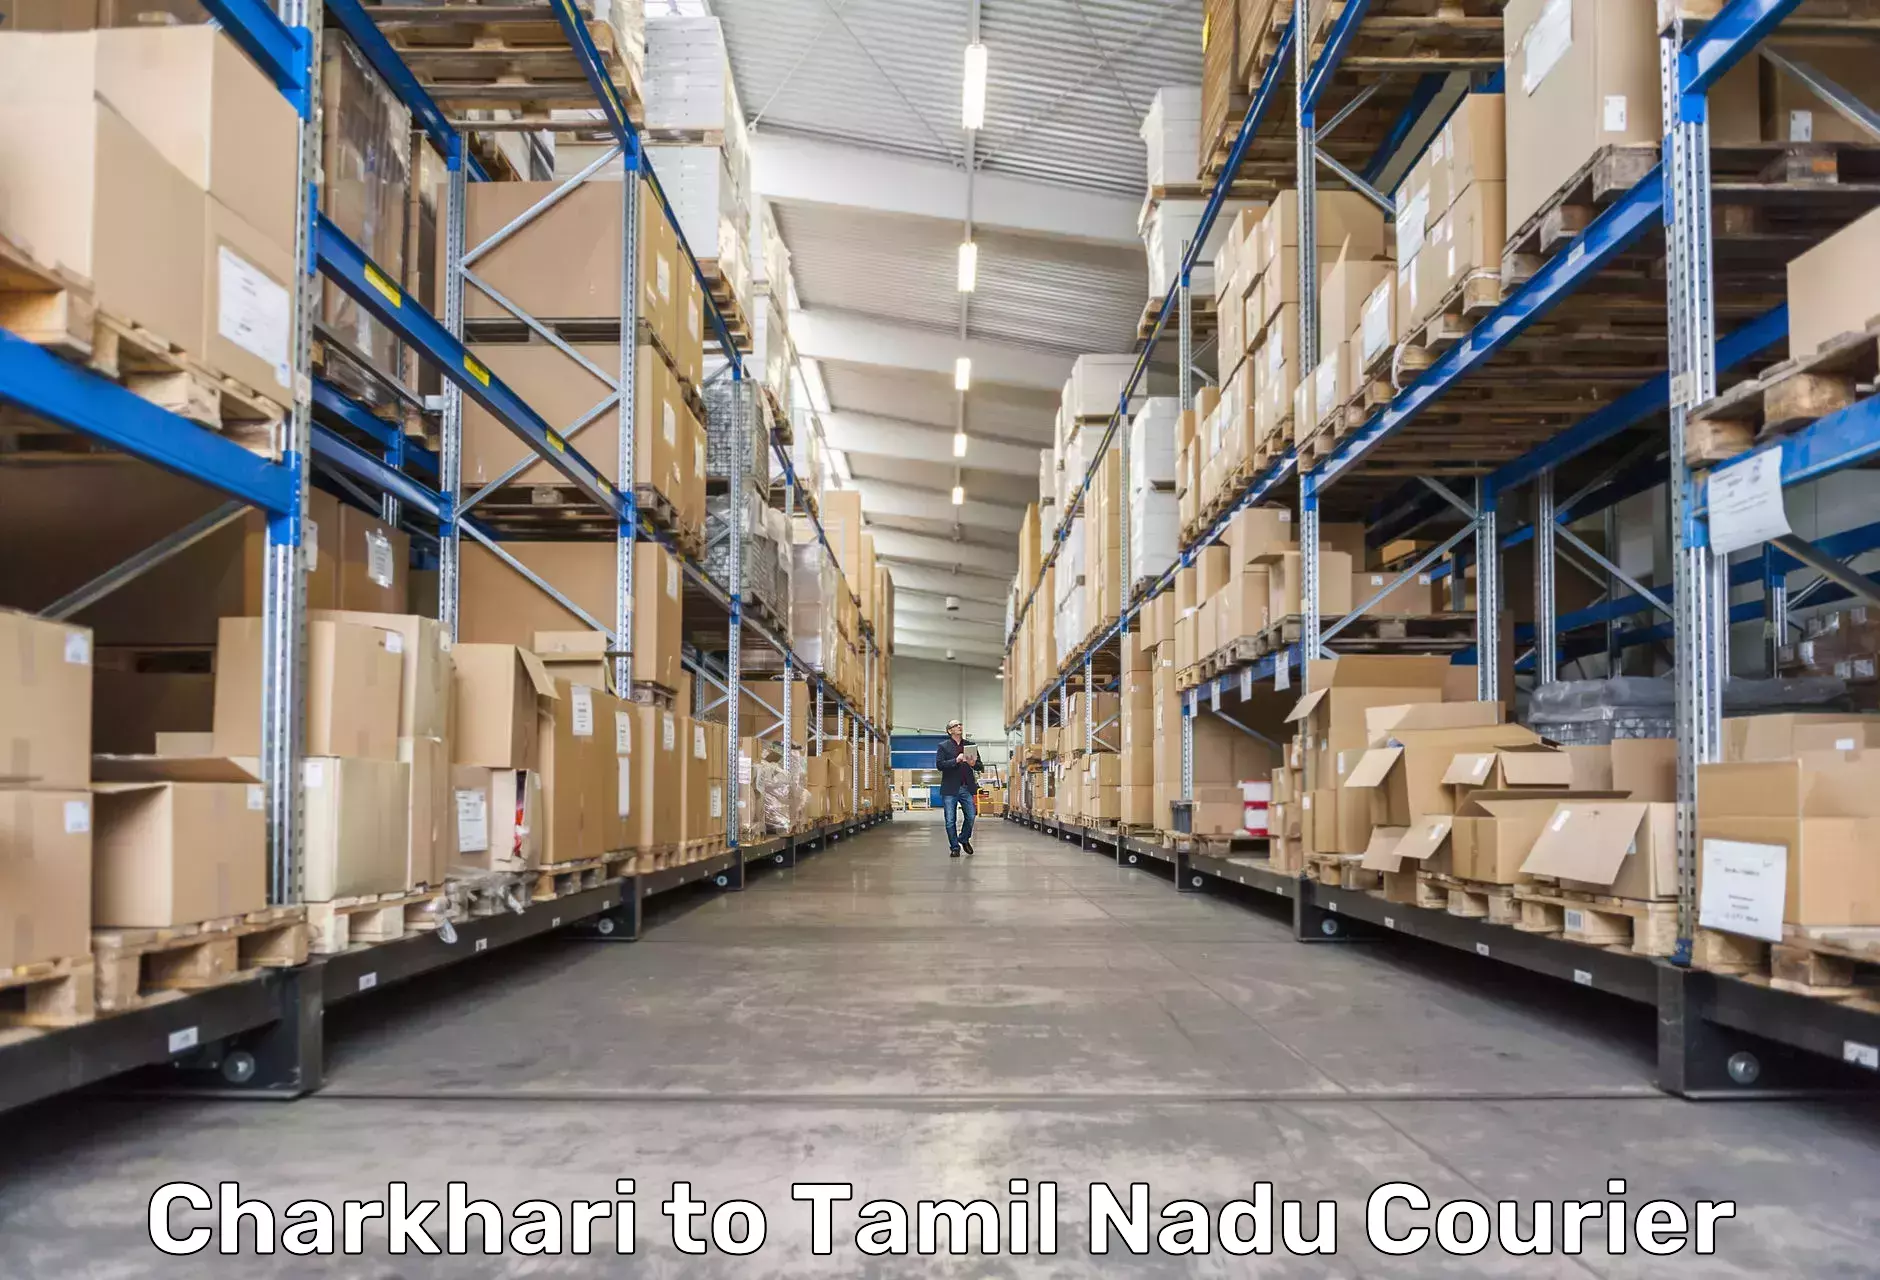 Express delivery capabilities Charkhari to Sankarapuram